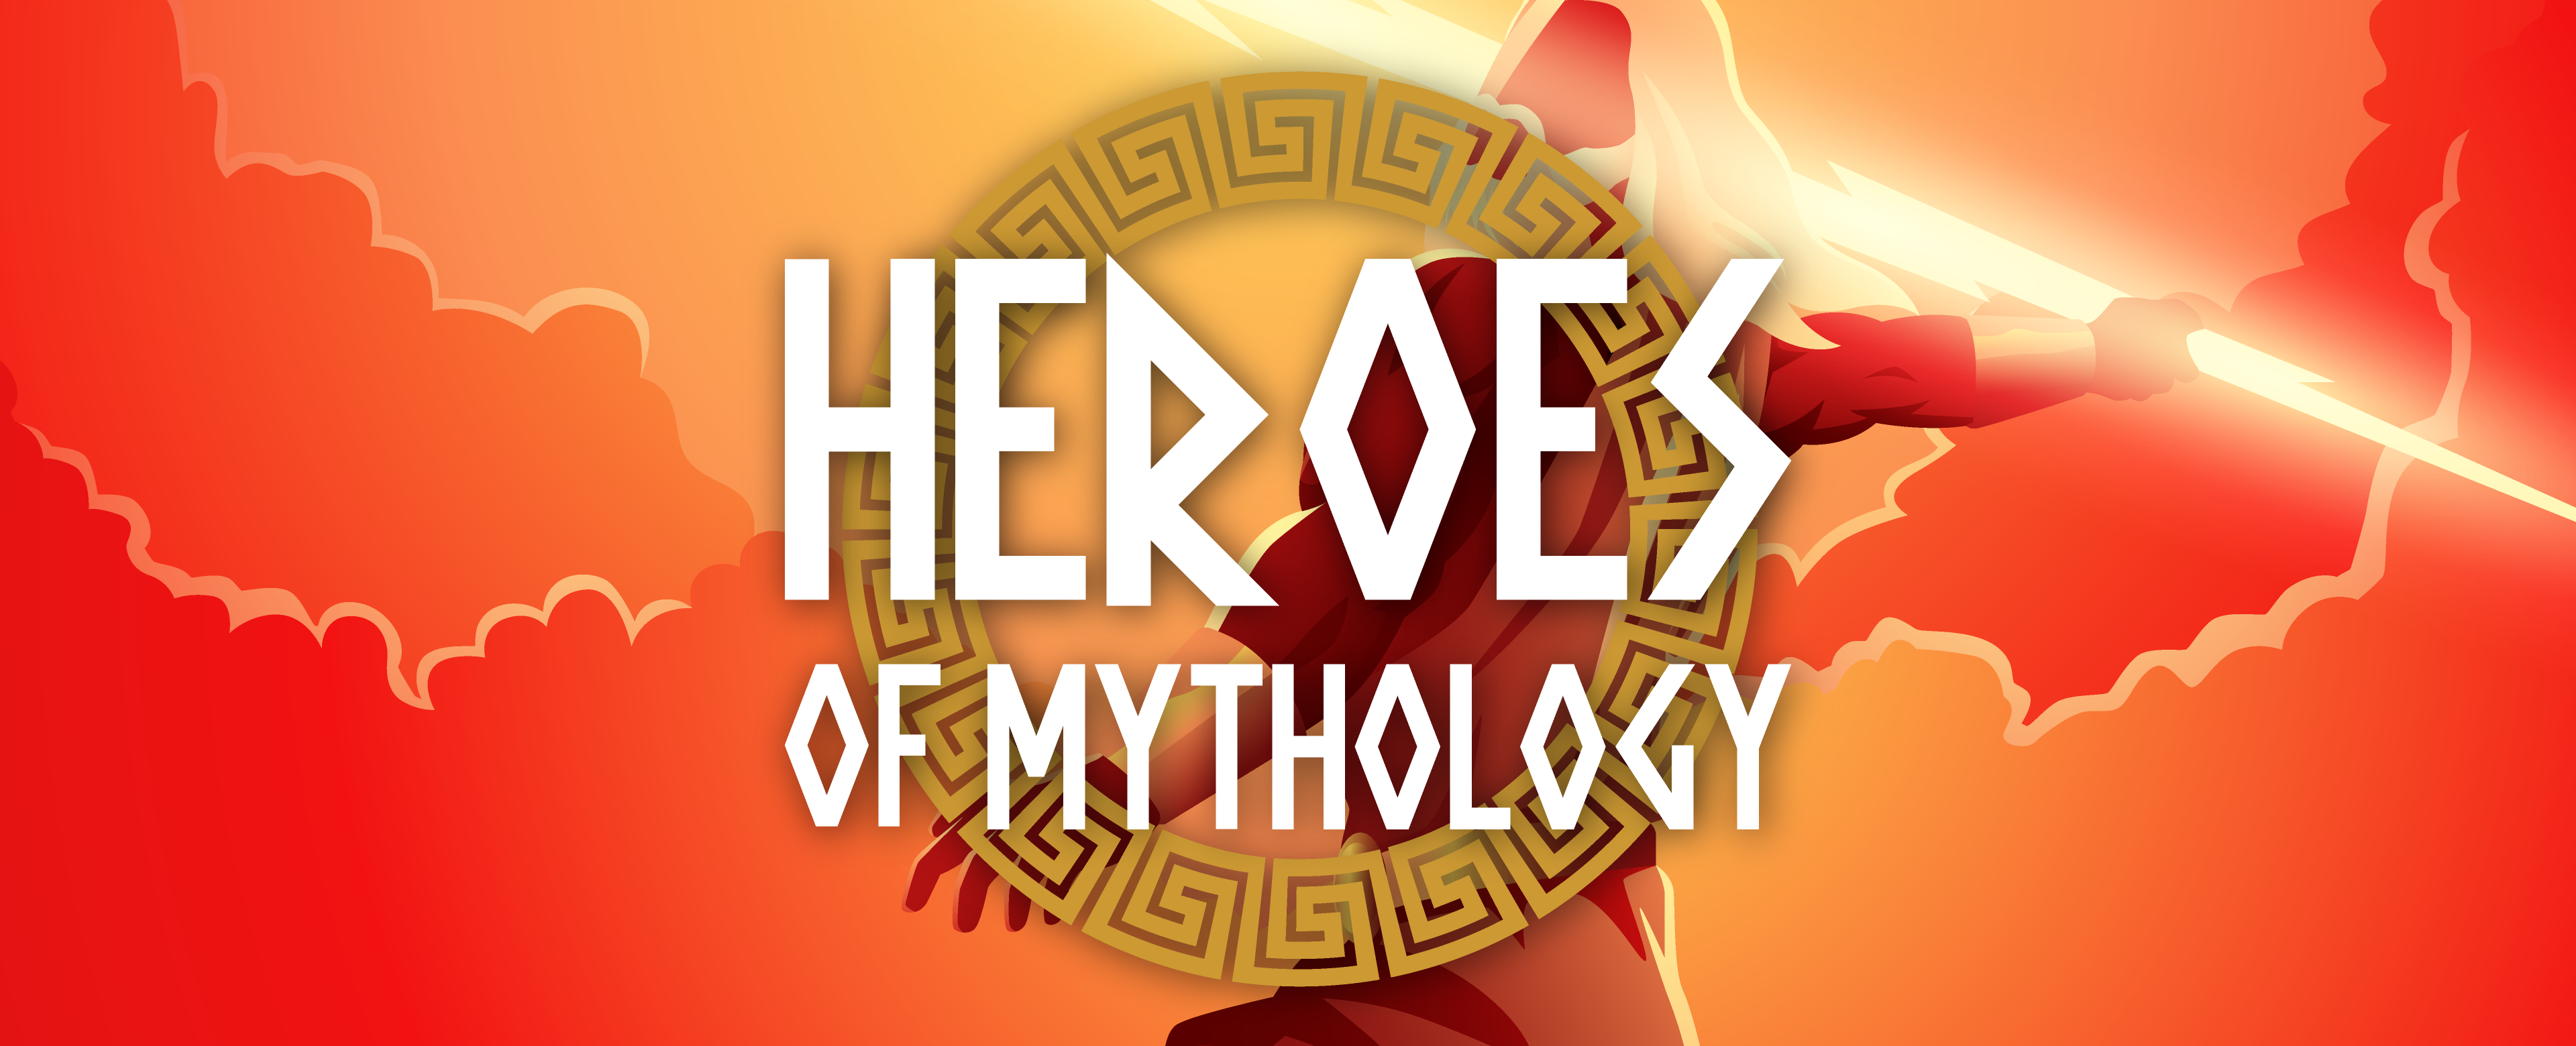 Heroes of Mythology